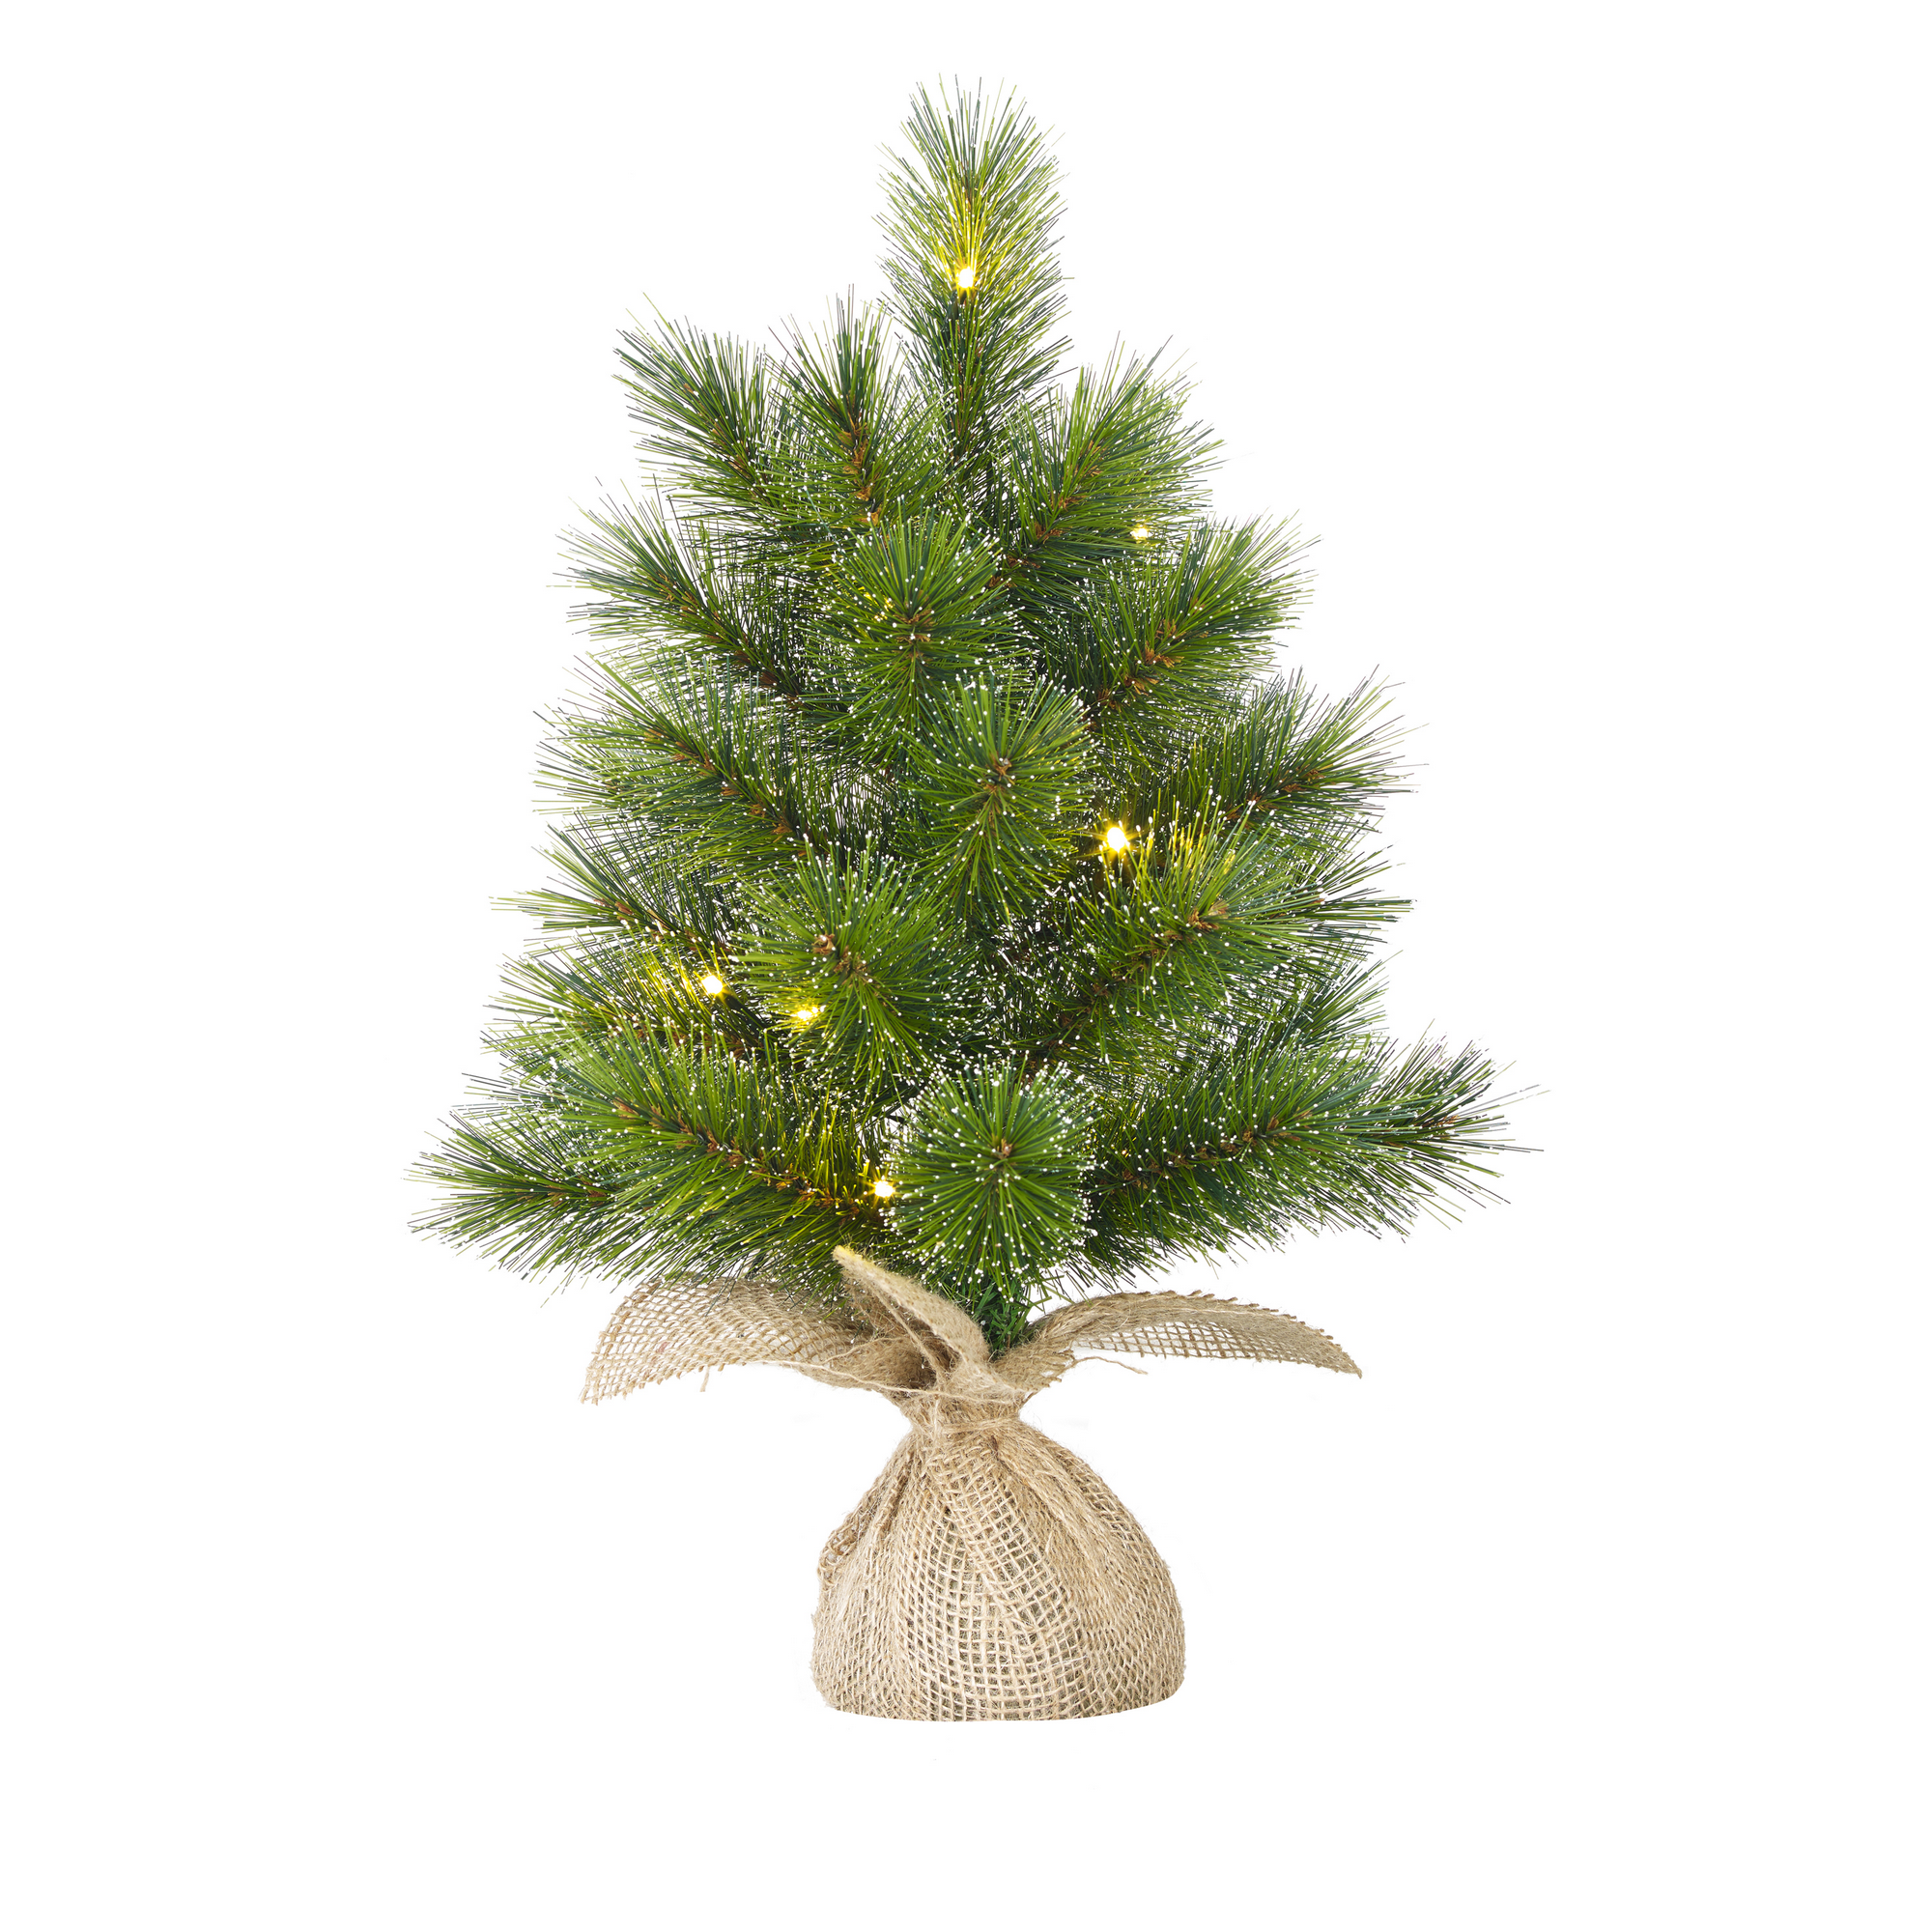 Künstlicher Weihnachtsbaum 'Jasper' grün 60 cm mit LED-Beleuchtung + product picture